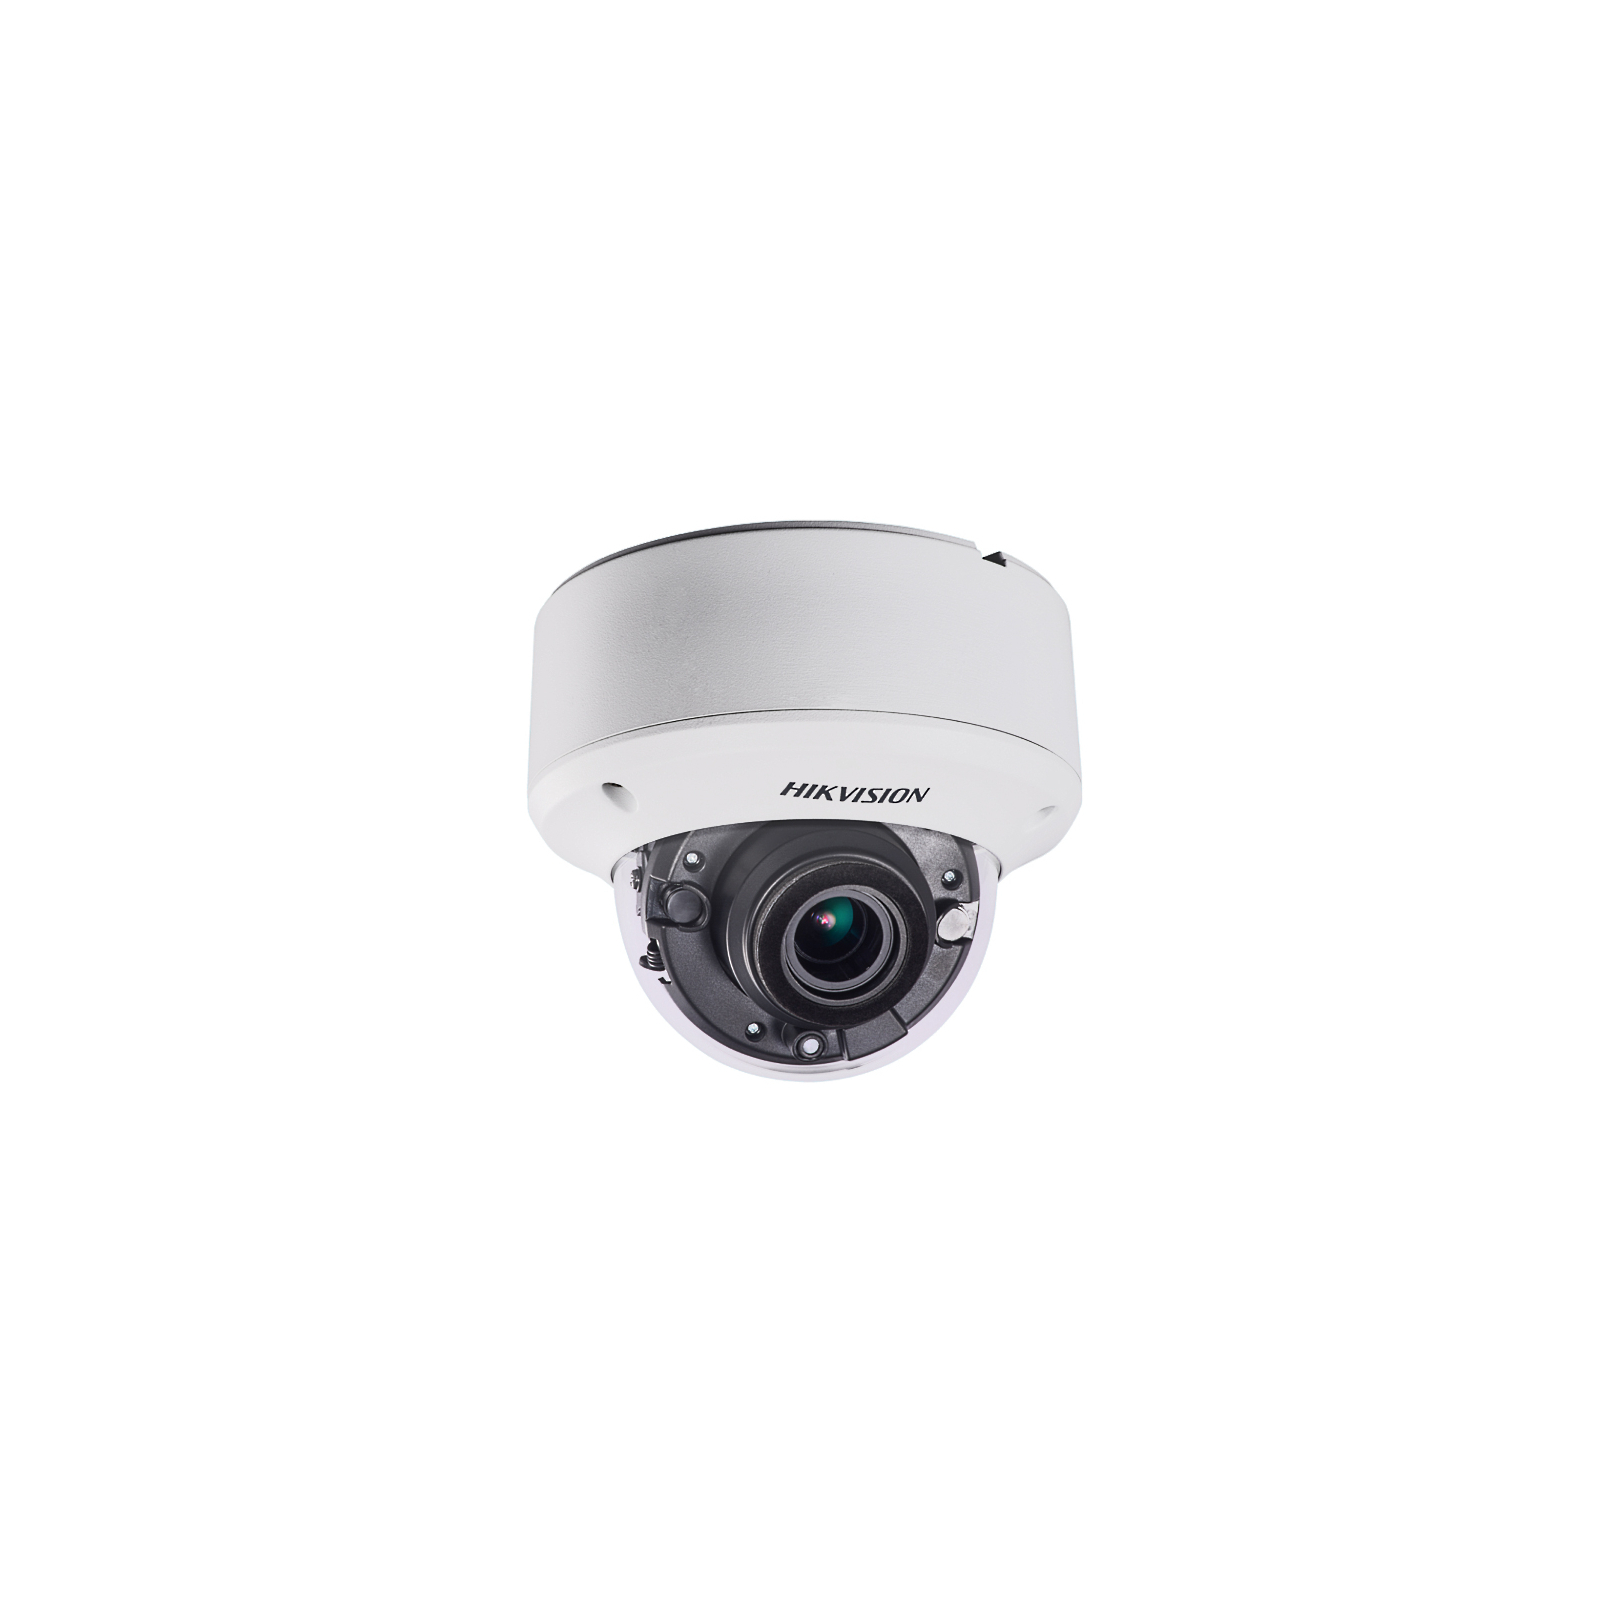 Камера видеонаблюдения Hikvision DS-2CE56F7T-ITZ (2.8-12)